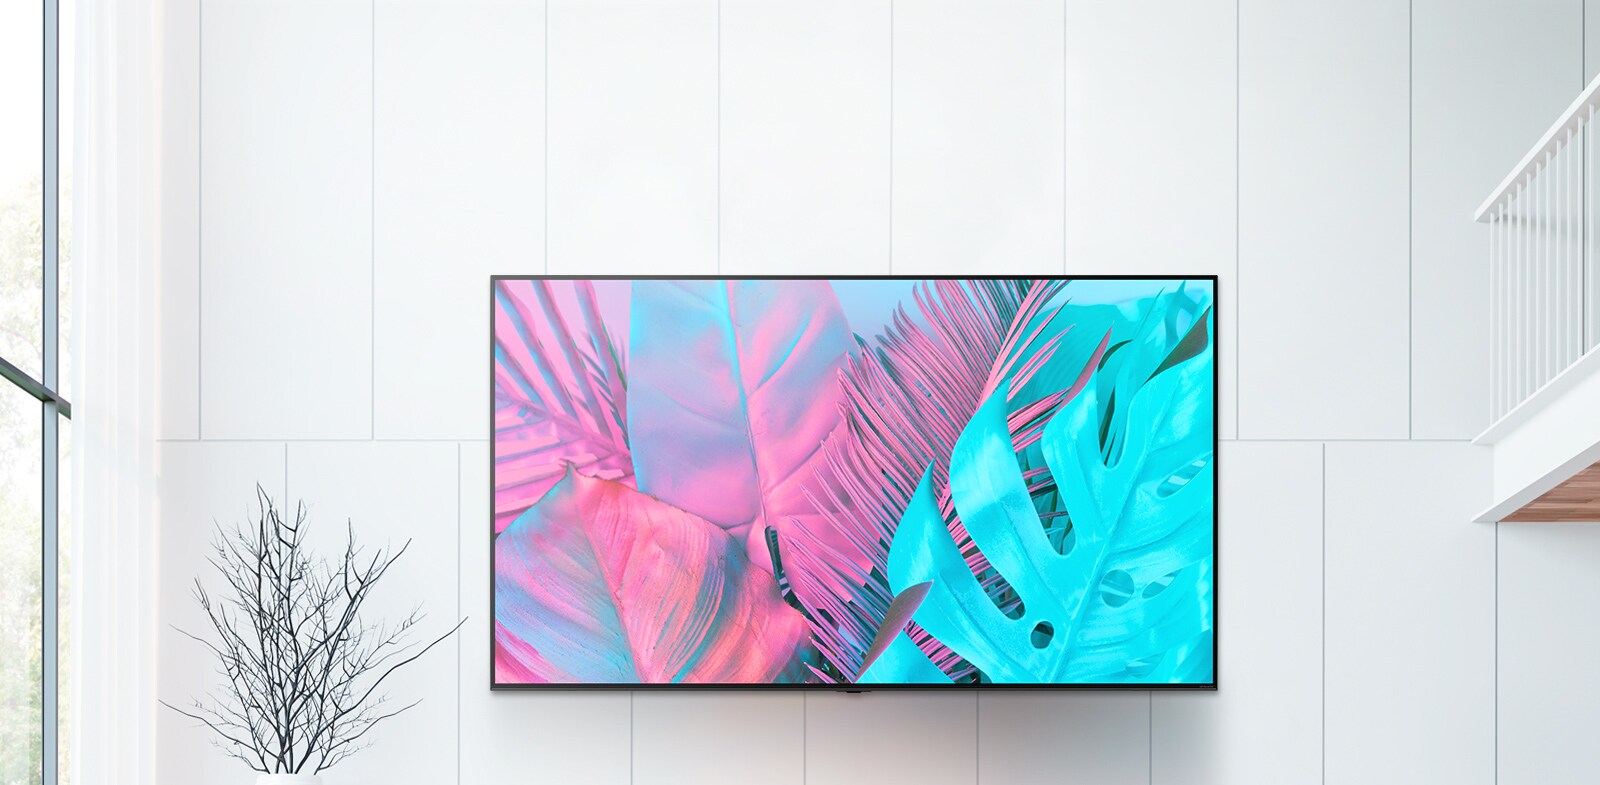 Một TV lớn màn hình phẳng gắn trên nền tường trắng. Màn hình hiển thị những chiếc lá lớn có màu sáng.